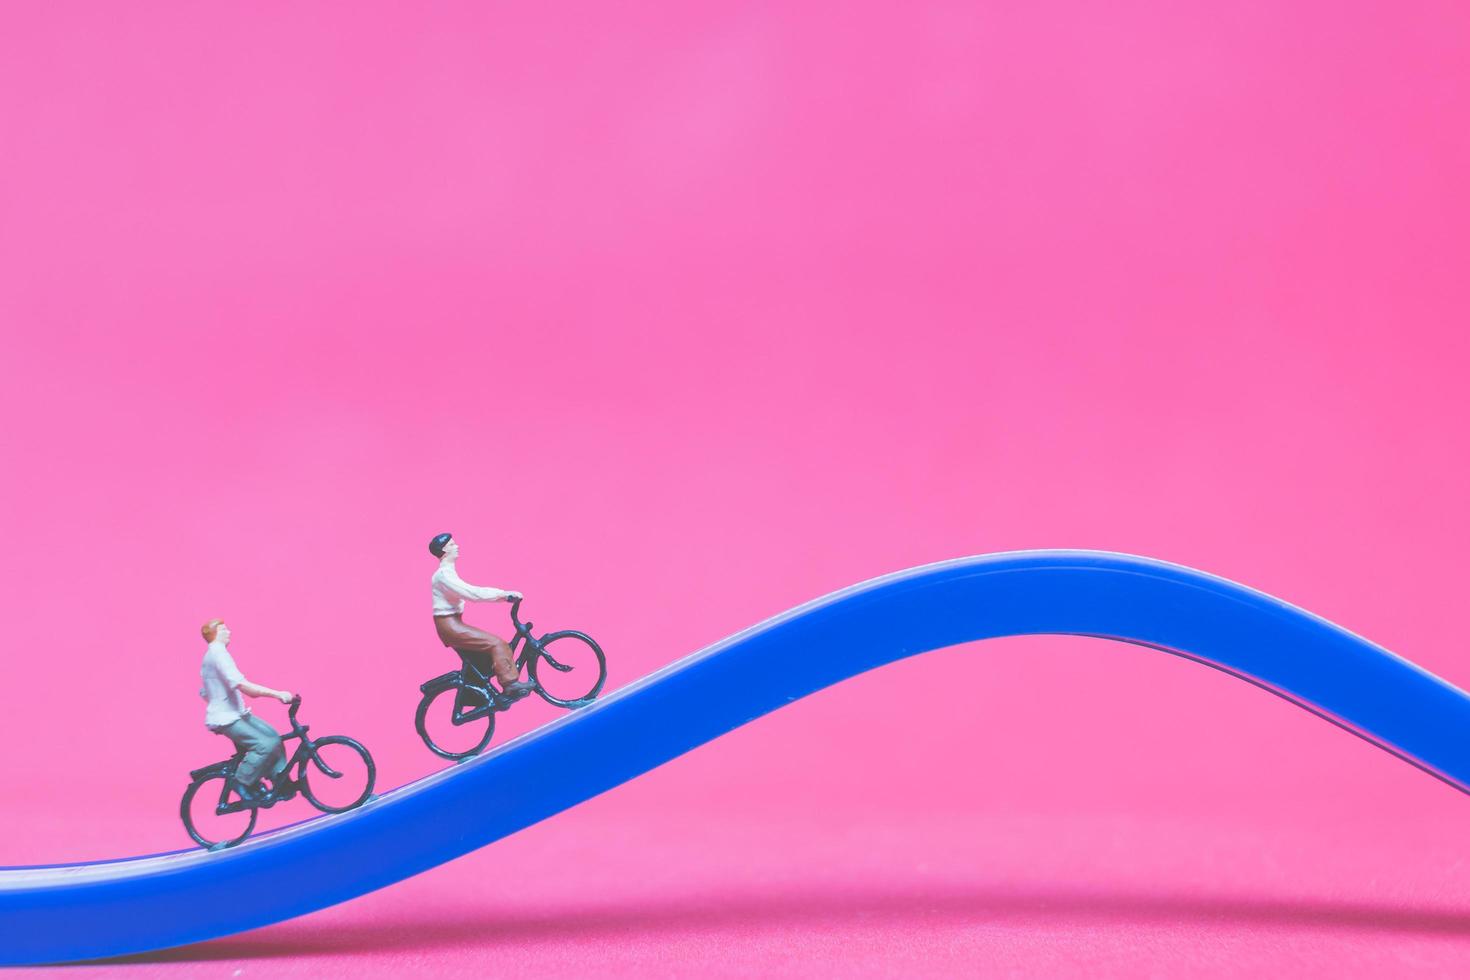 miniatuurreizigers met fietsen op een blauwe brug op een roze achtergrond foto